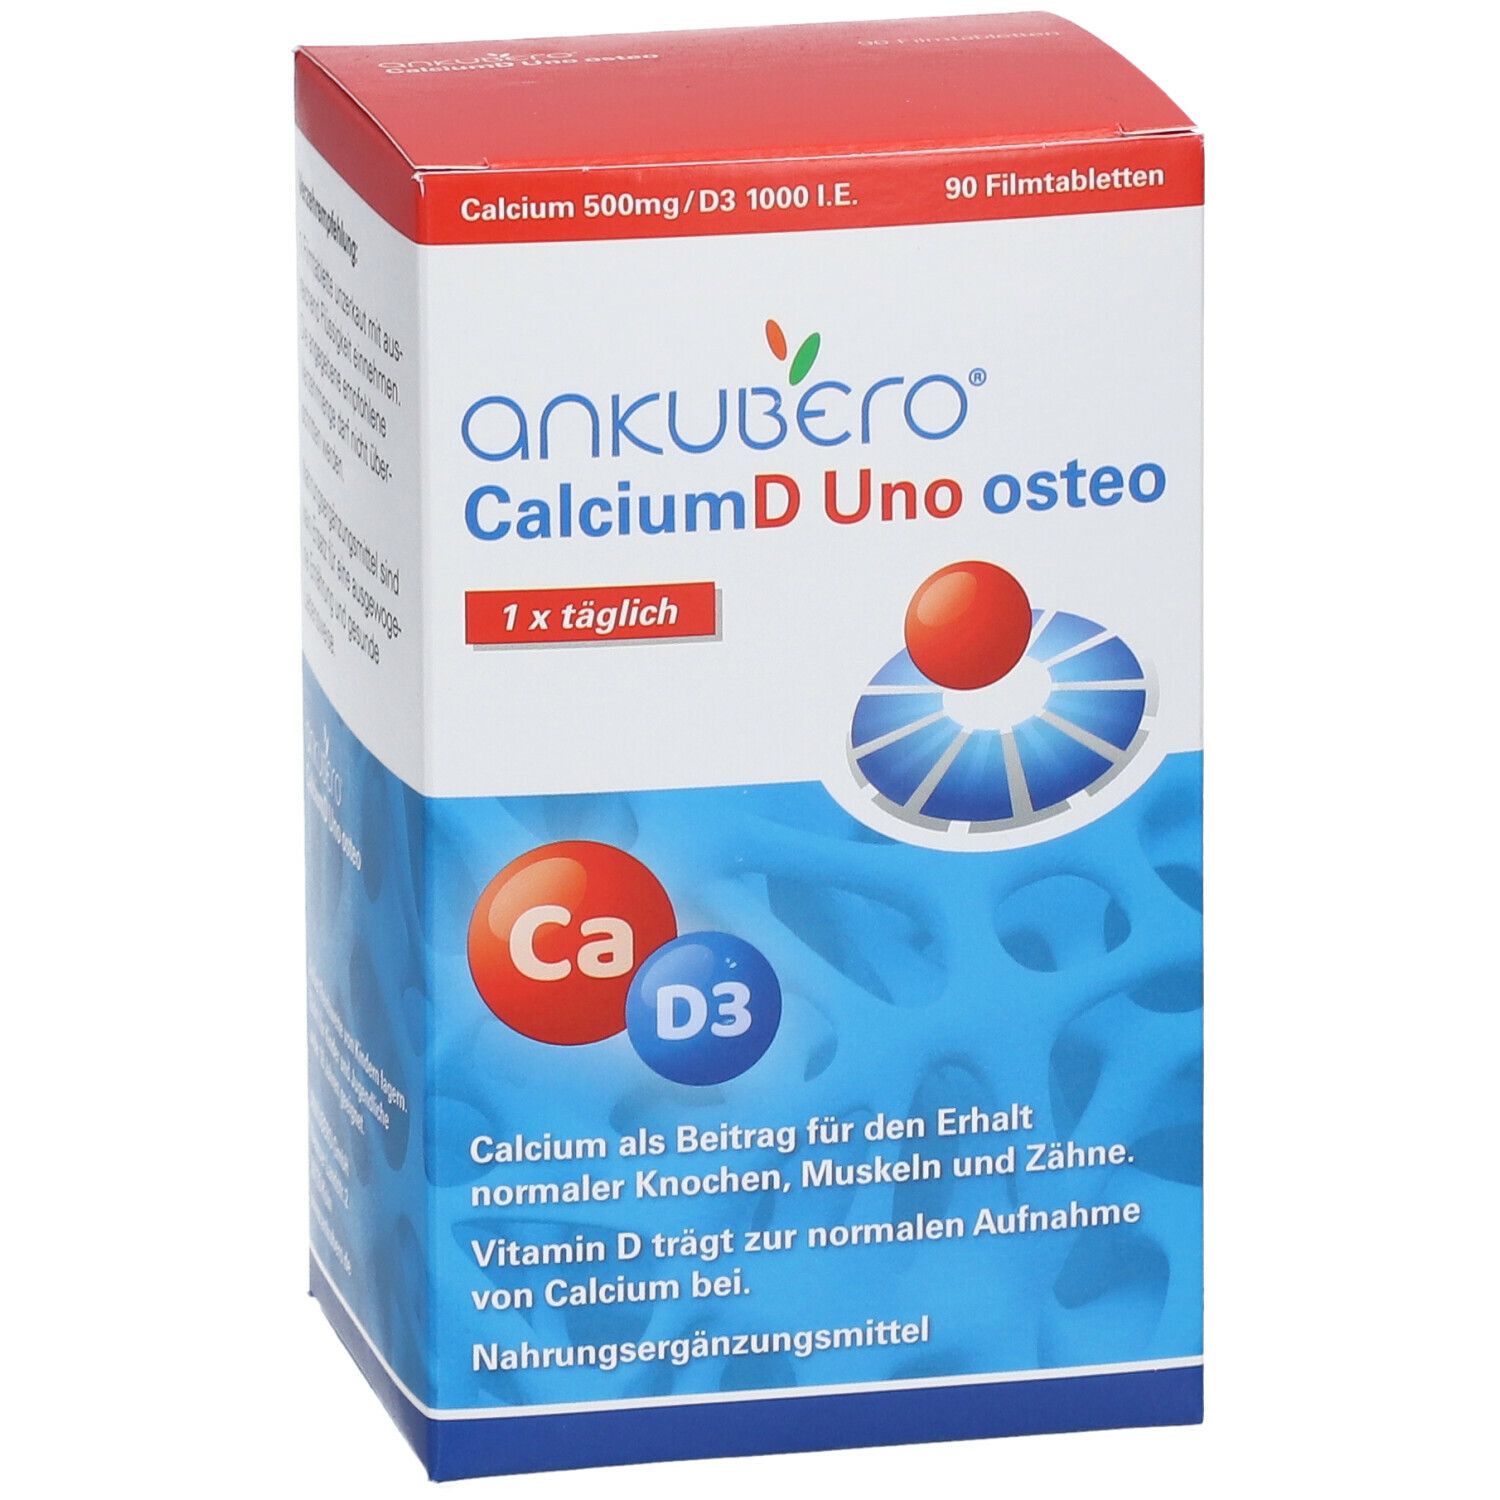 CalciumD Uno osteo